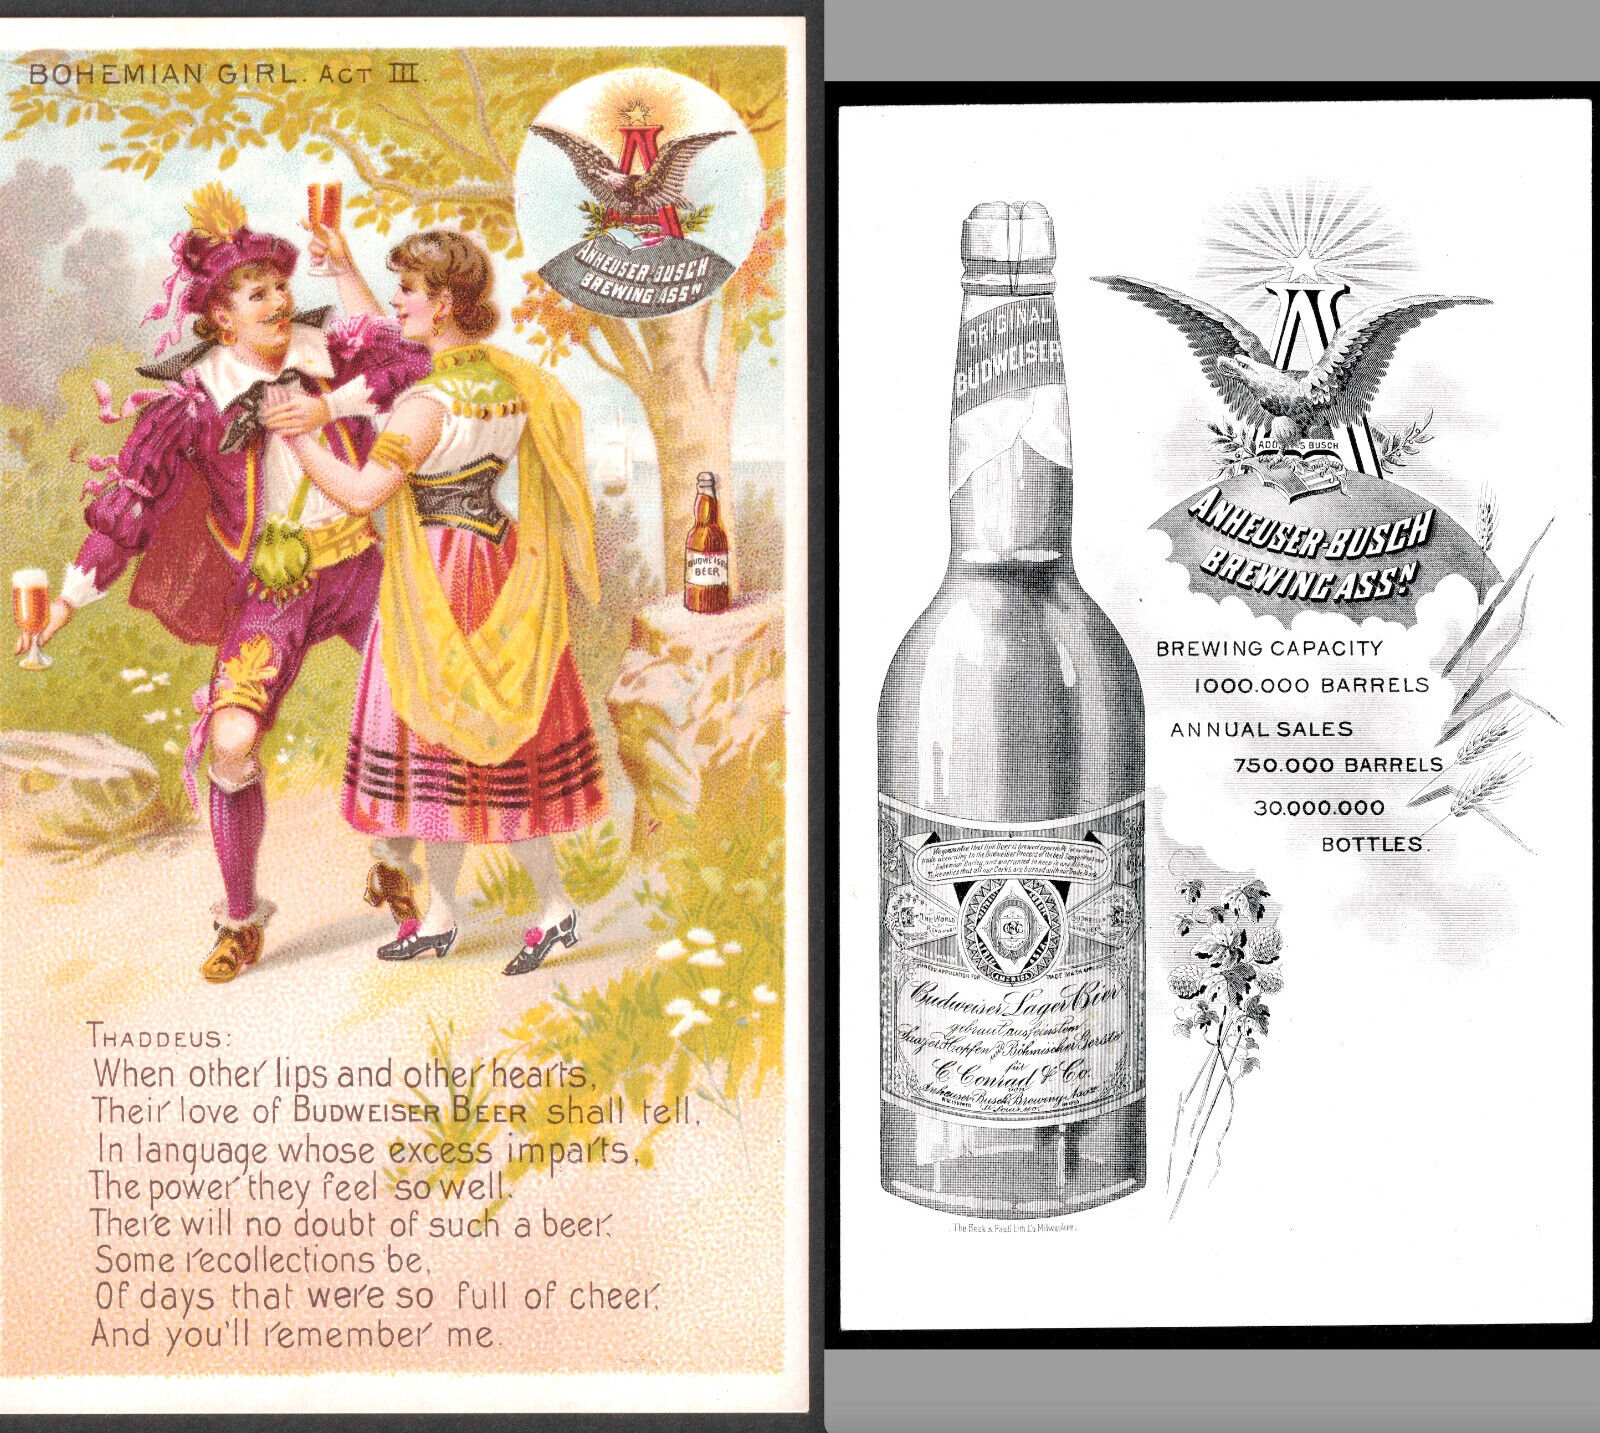 Anheuser Busch Brewing 1800's Budweiser Bohemian Girl Play Bottle Ad Trade Card